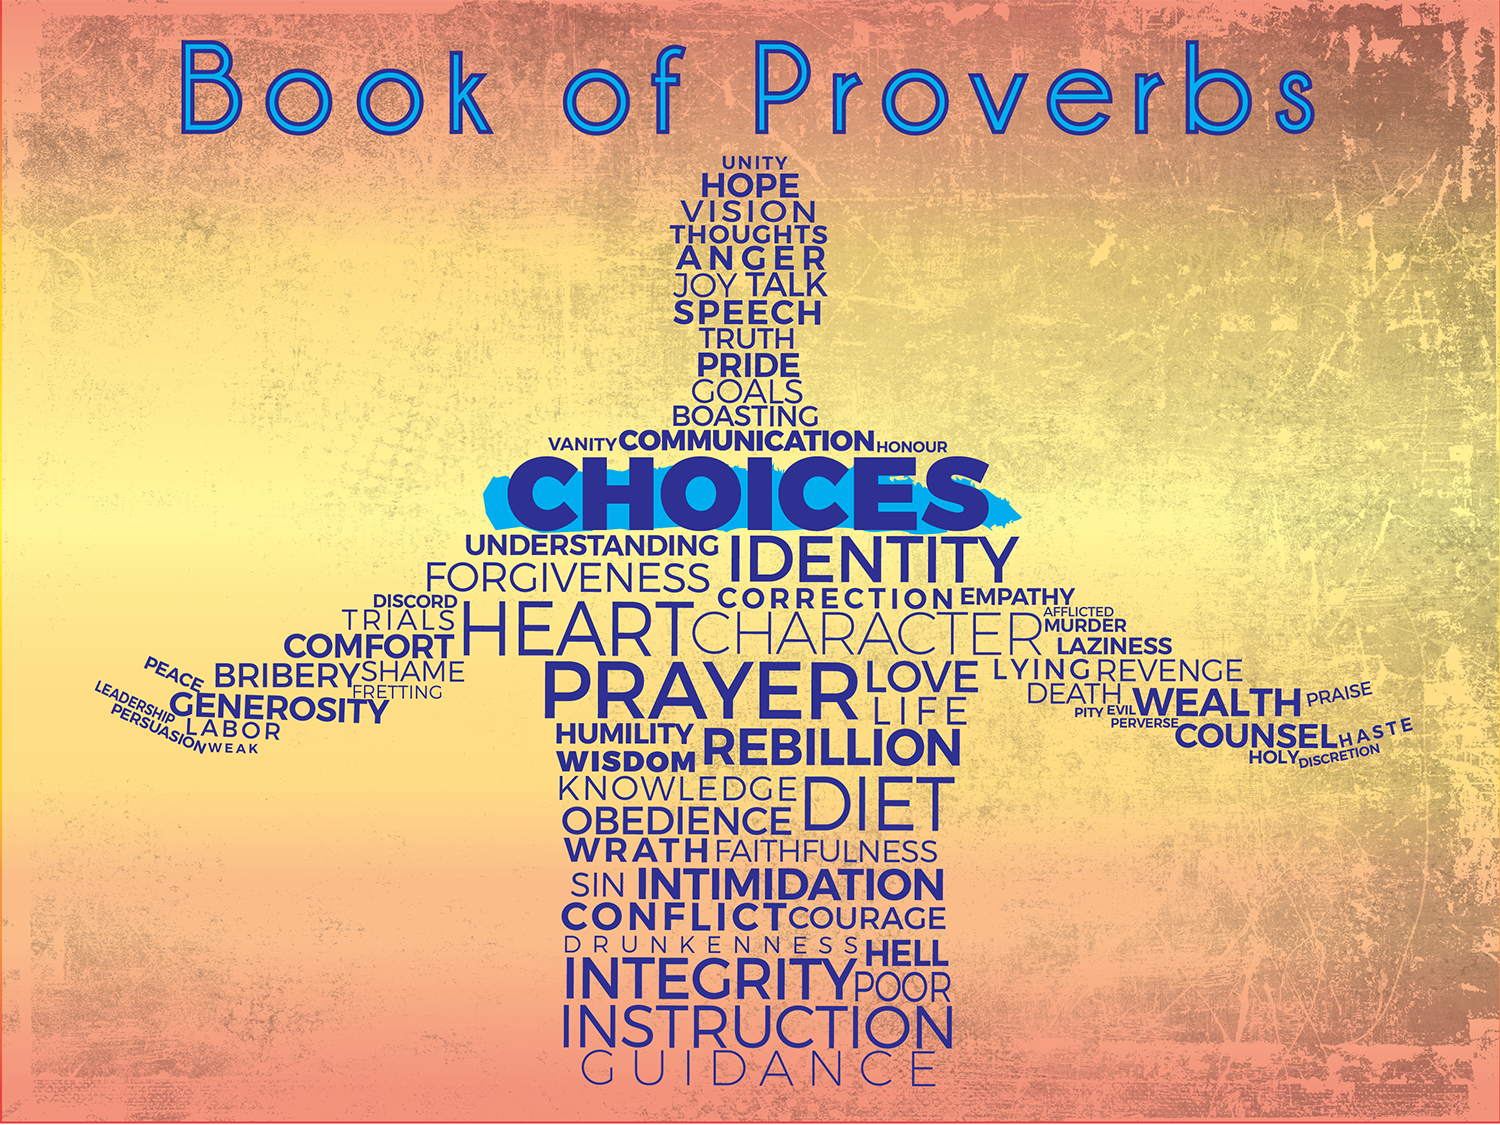 Proverbs: Choices